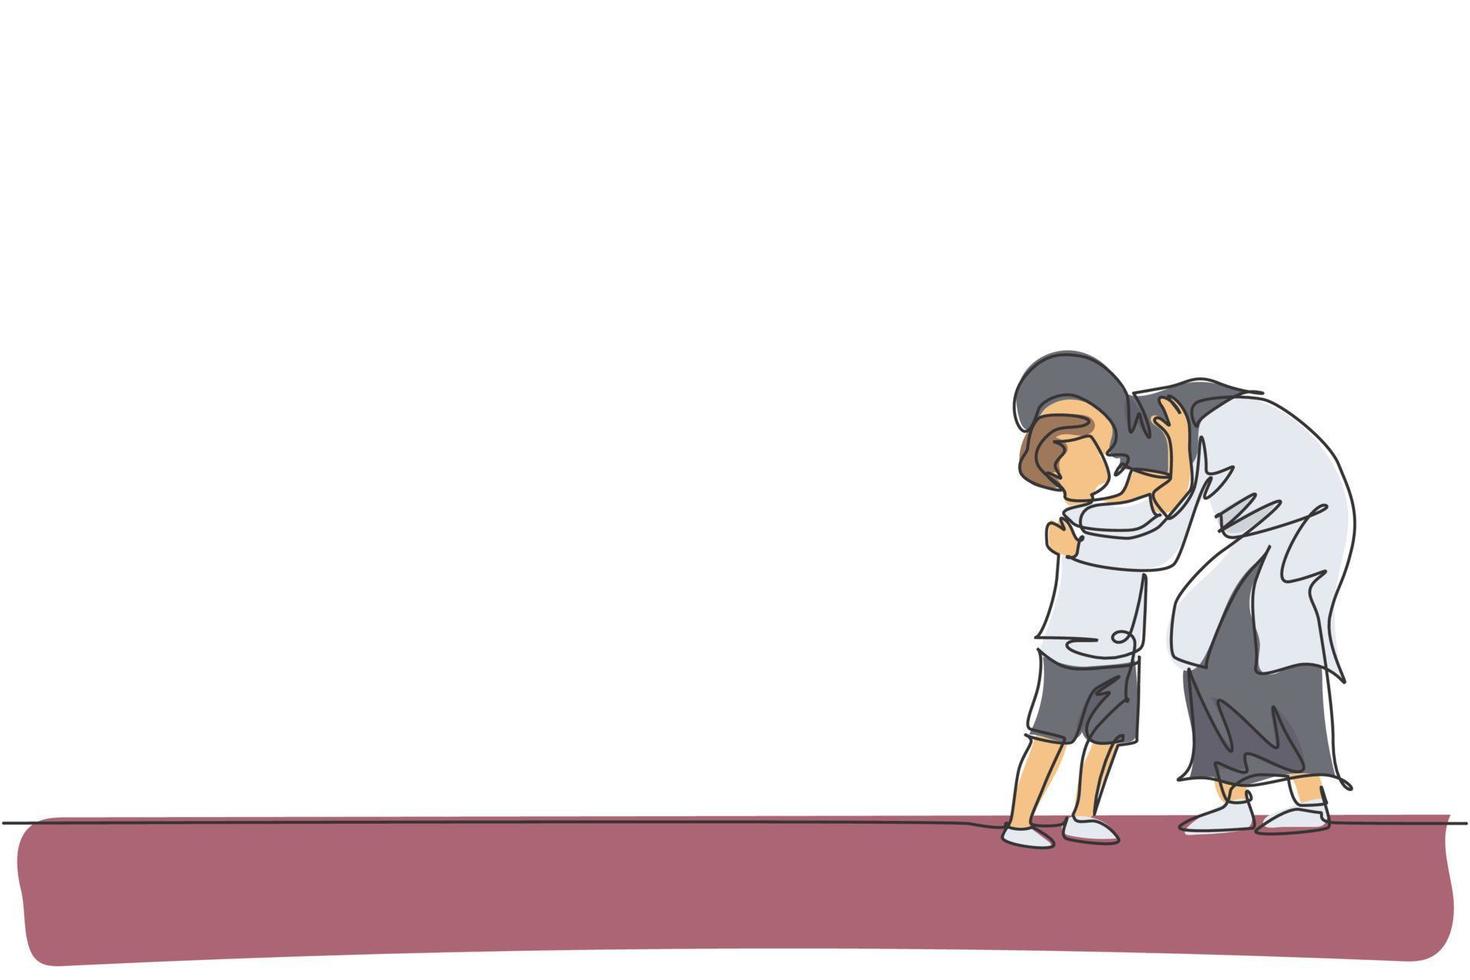 en kontinuerlig linjeteckning av ung islamisk mamma kramar sin son innan han går till skolan. lyckliga arabiska muslimska kärleksfulla föräldraskap familjen koncept. dynamisk enkel linje rita design vektor illustration